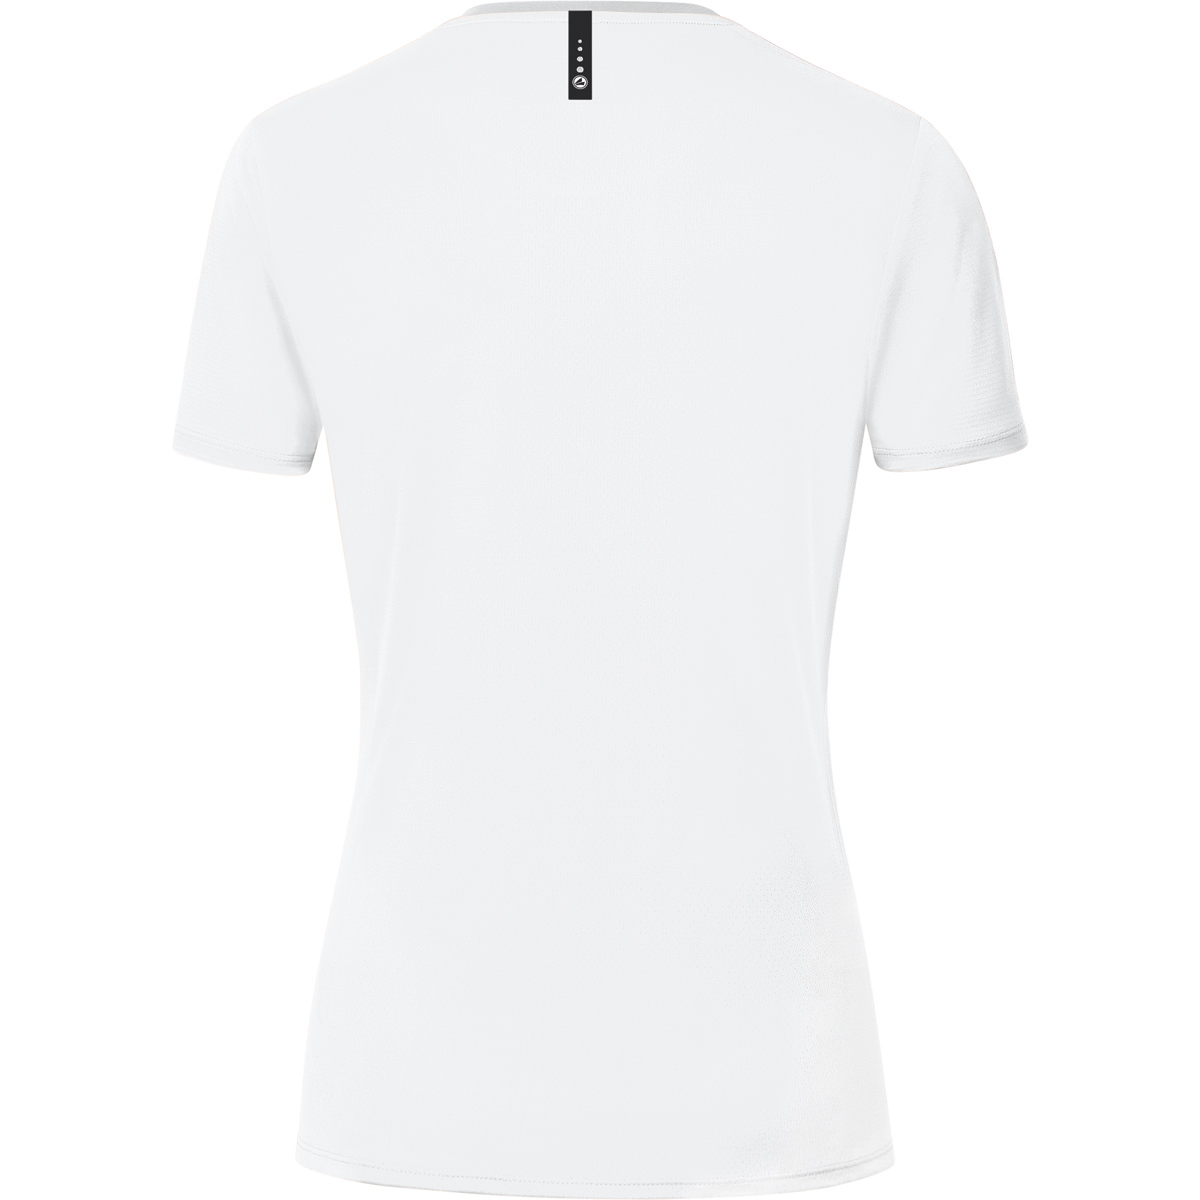 T-Shirt 36, Champ 6120 JAKO weiß, 2.0 Damen, Gr.